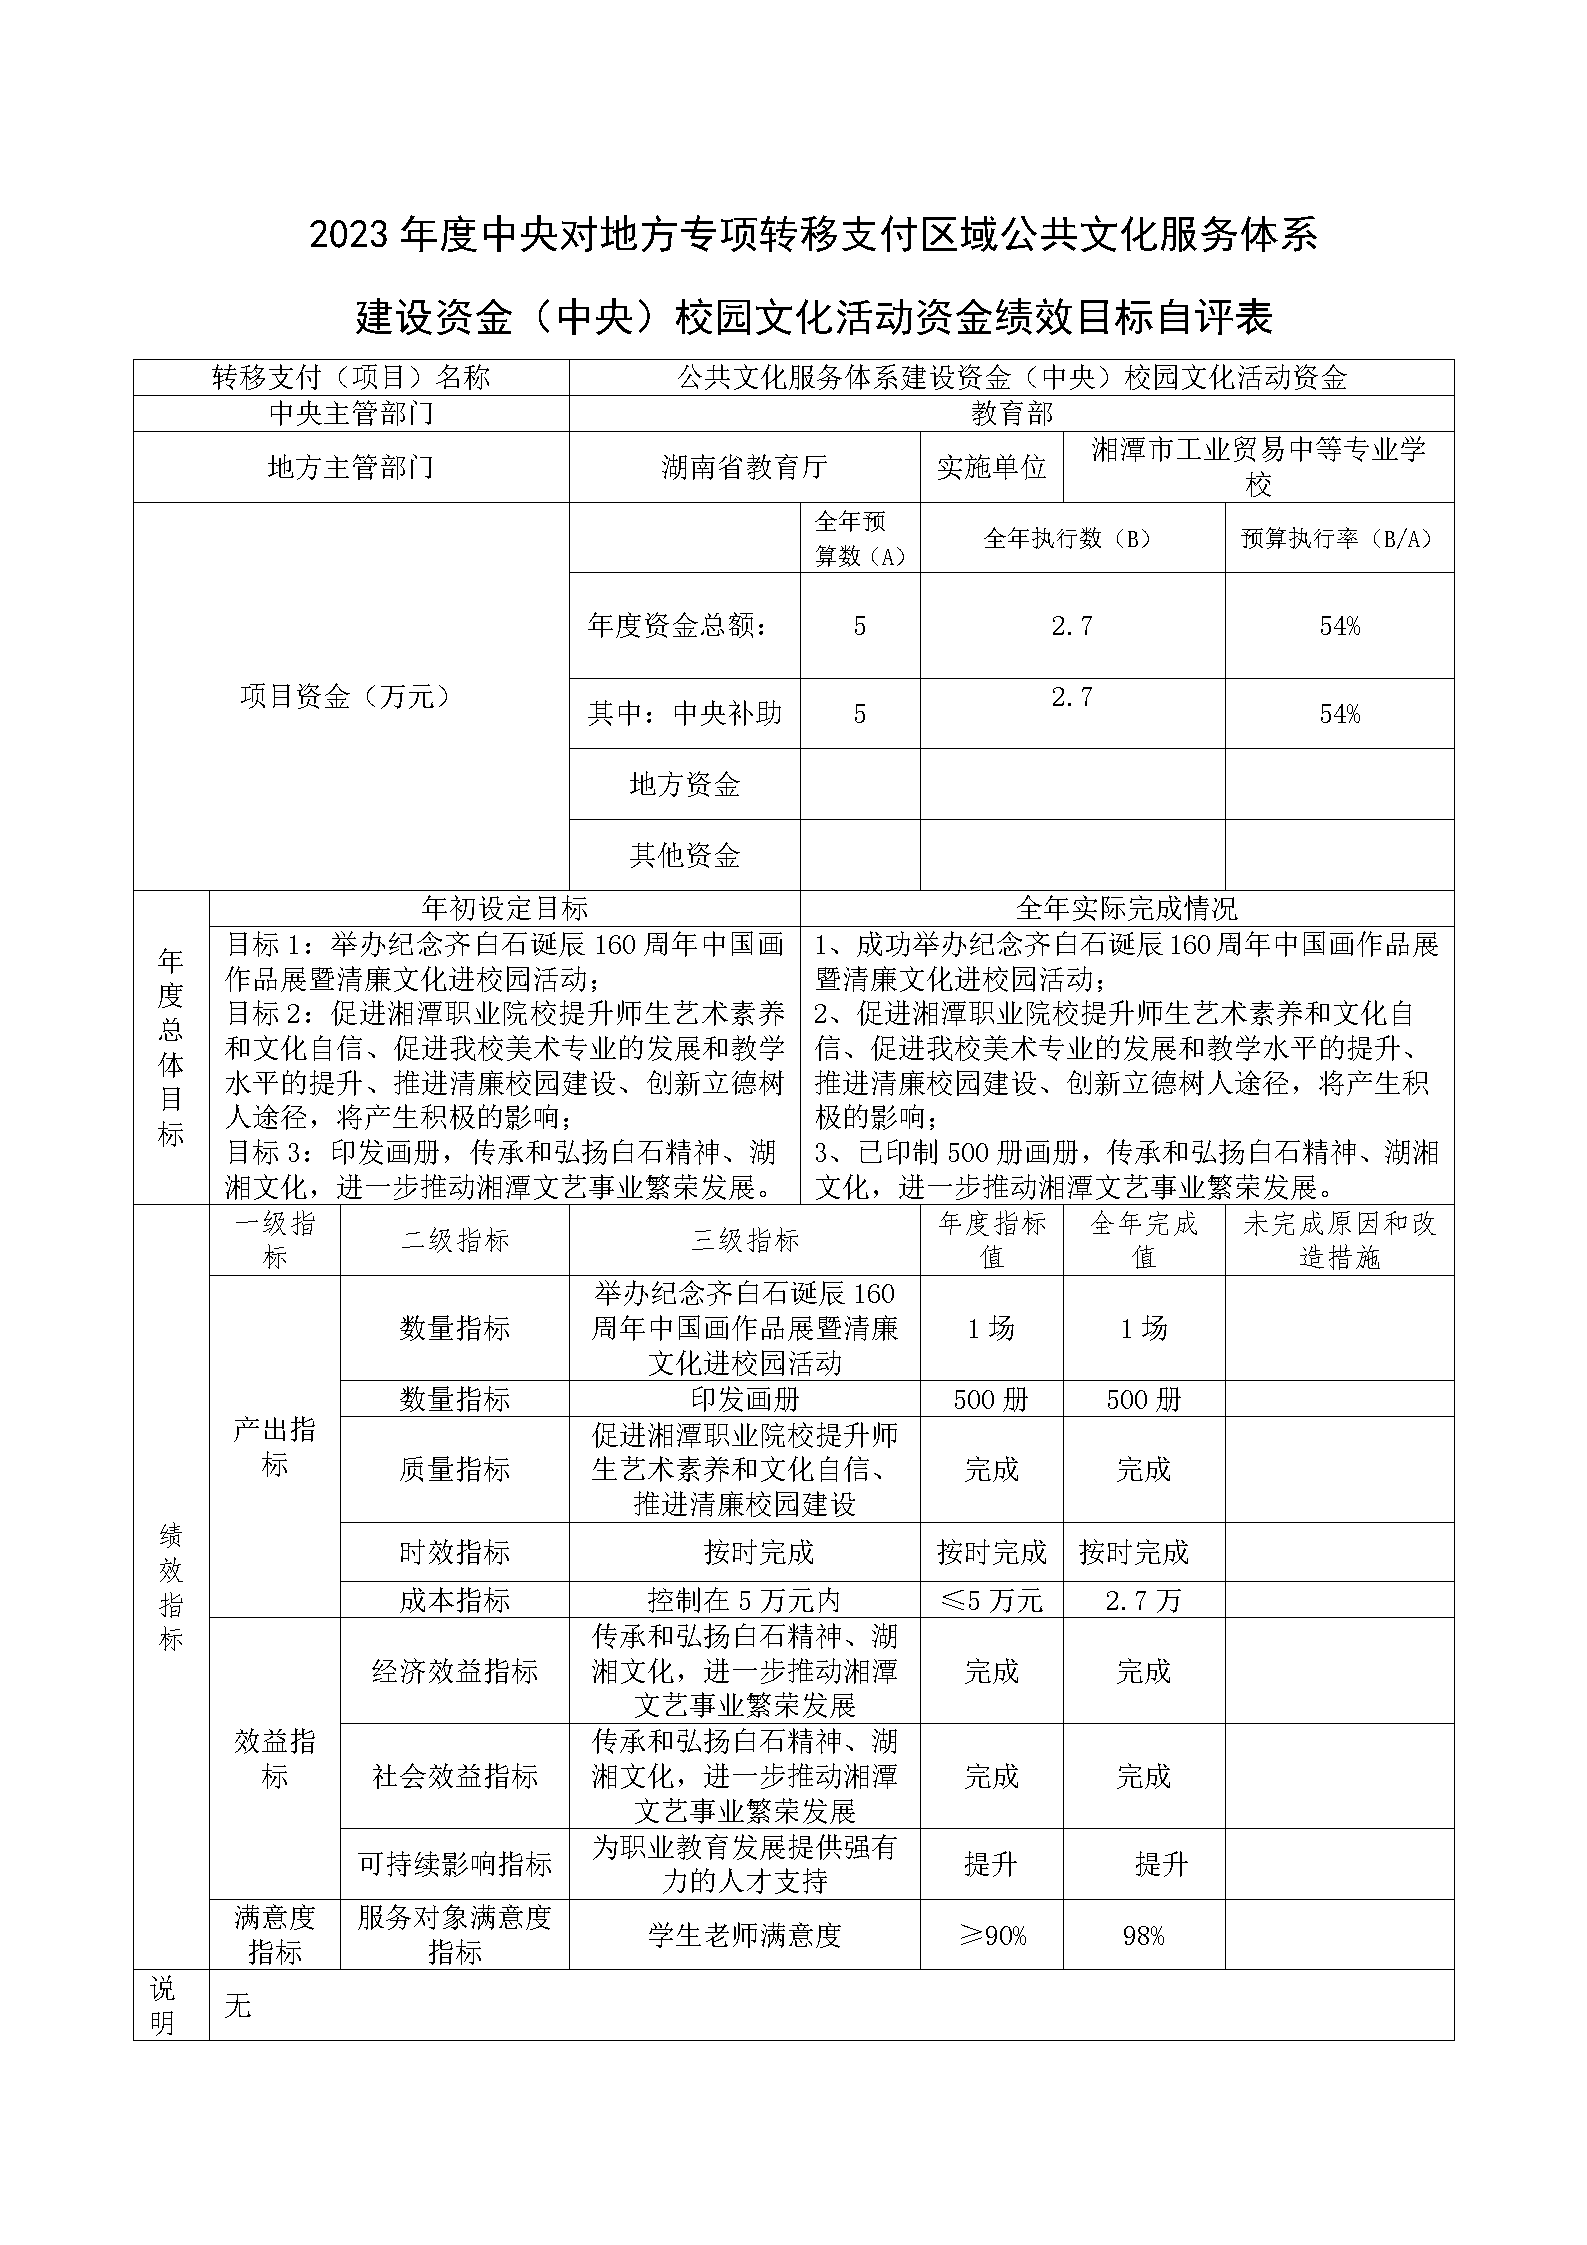 湘潭市工业贸易中等专业学校2023年公共文化服务体系建设补助资金绩效自评报告及项目表_06.png